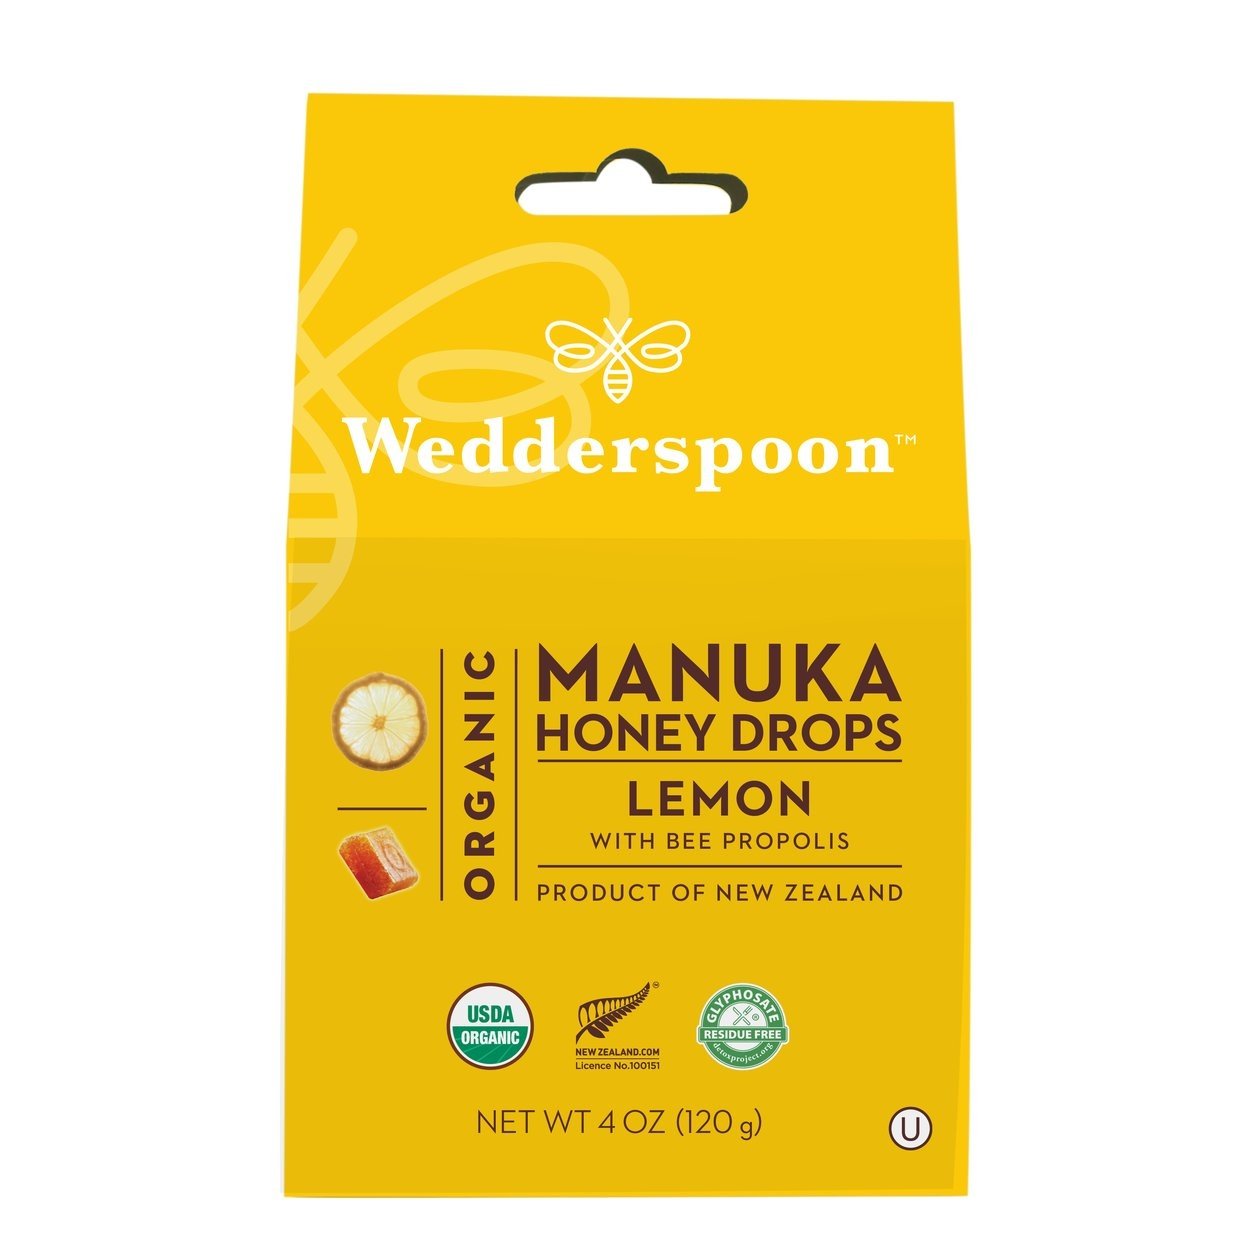 Wedderspoon - Manuka Honey Drops - Lemon w/ Bee Propolis - 120g